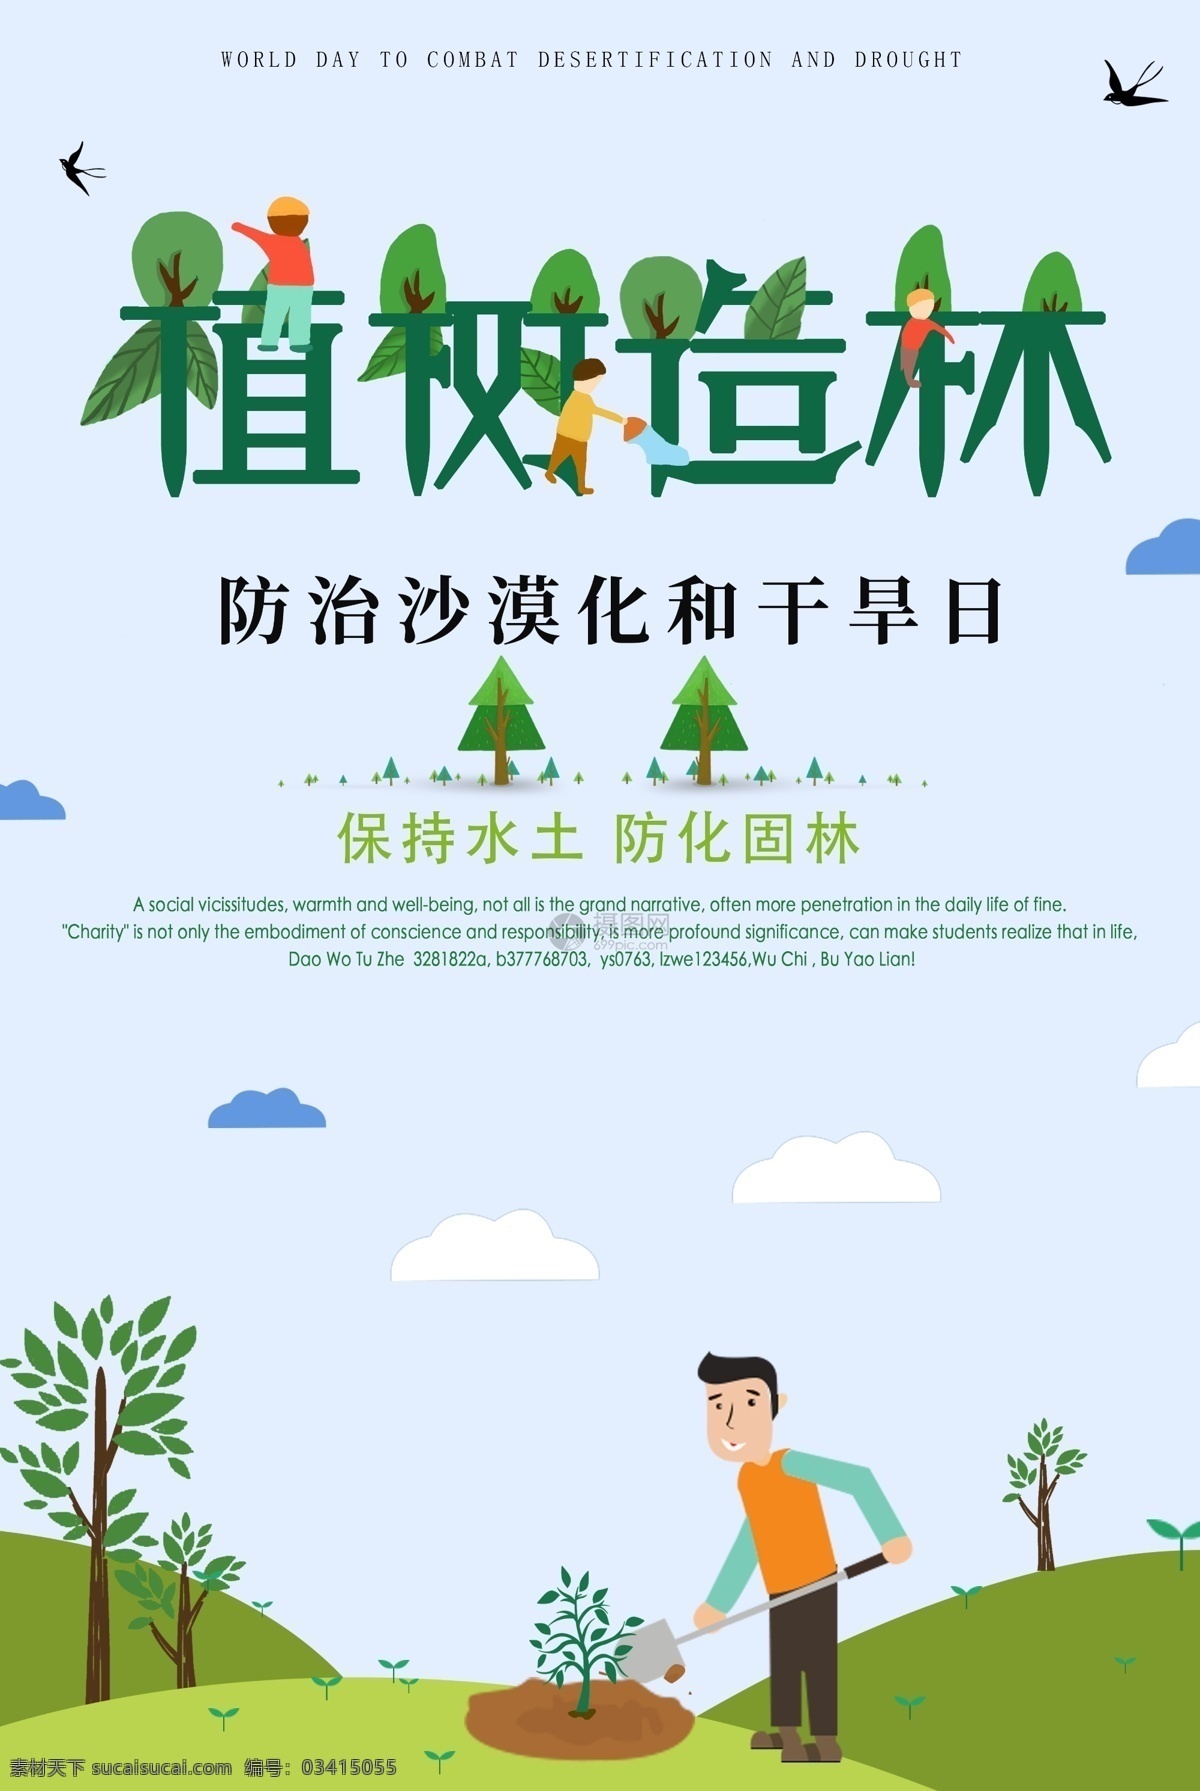 植树造林 公益 海报 干旱 爱护环境 环保 绿化 公益海报